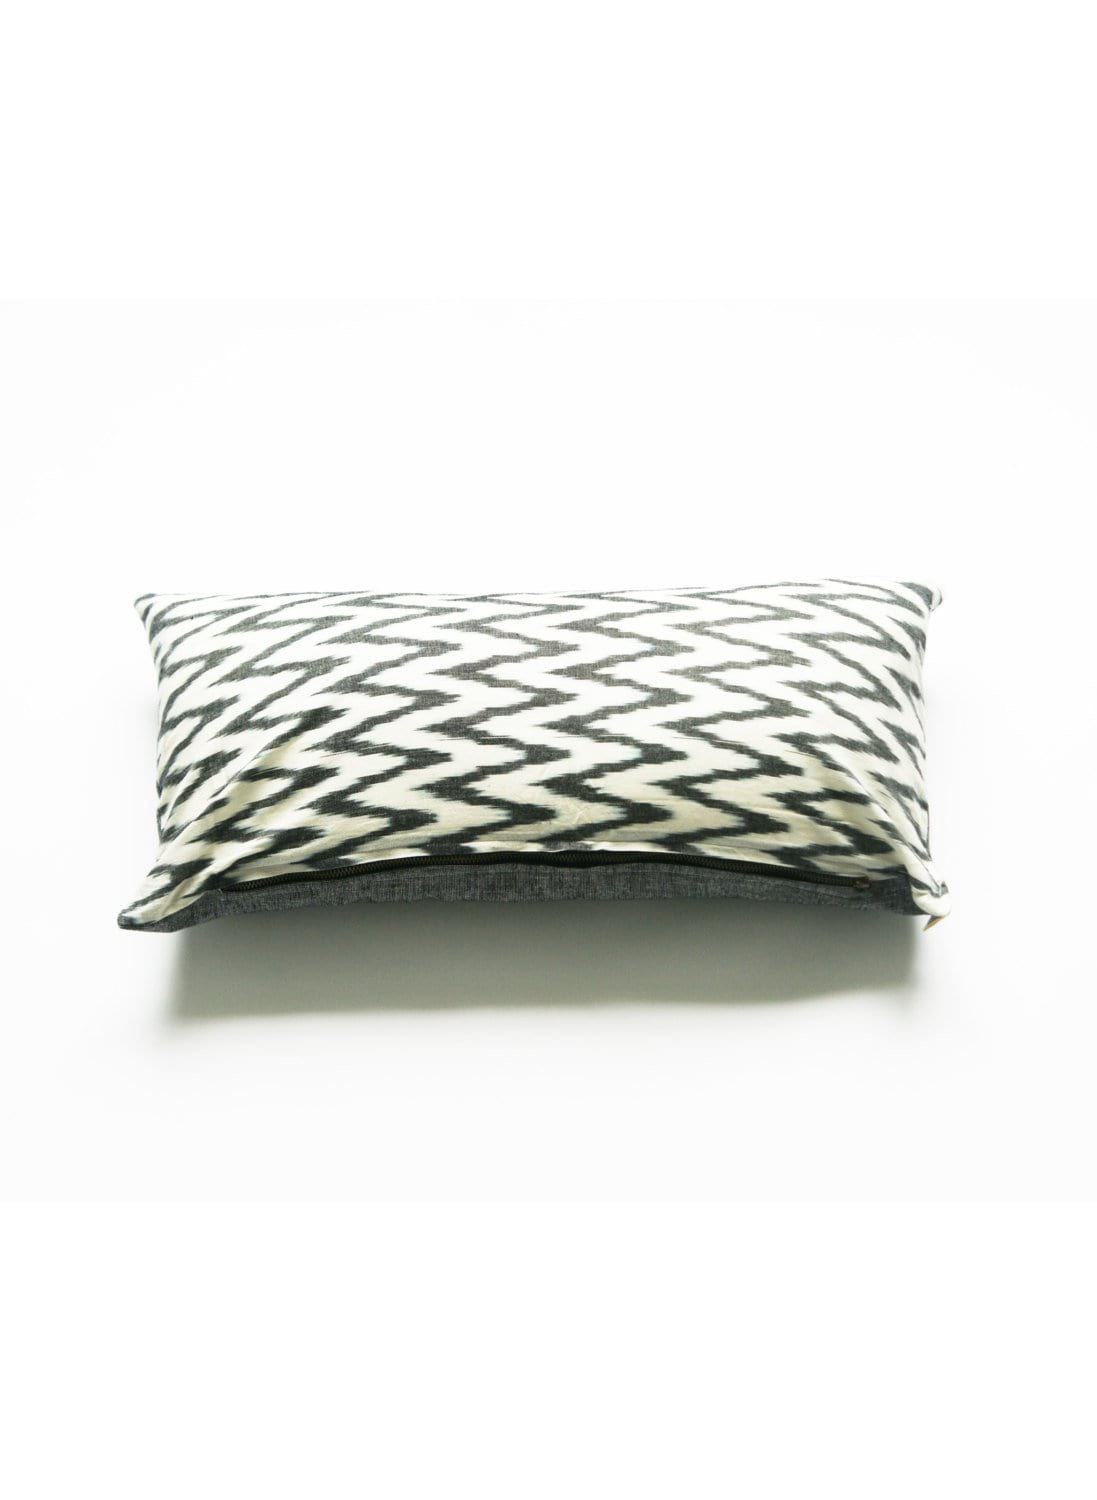 Grey Chevron Cotton Ikat Woven Lumbar Pillow 12 x 24